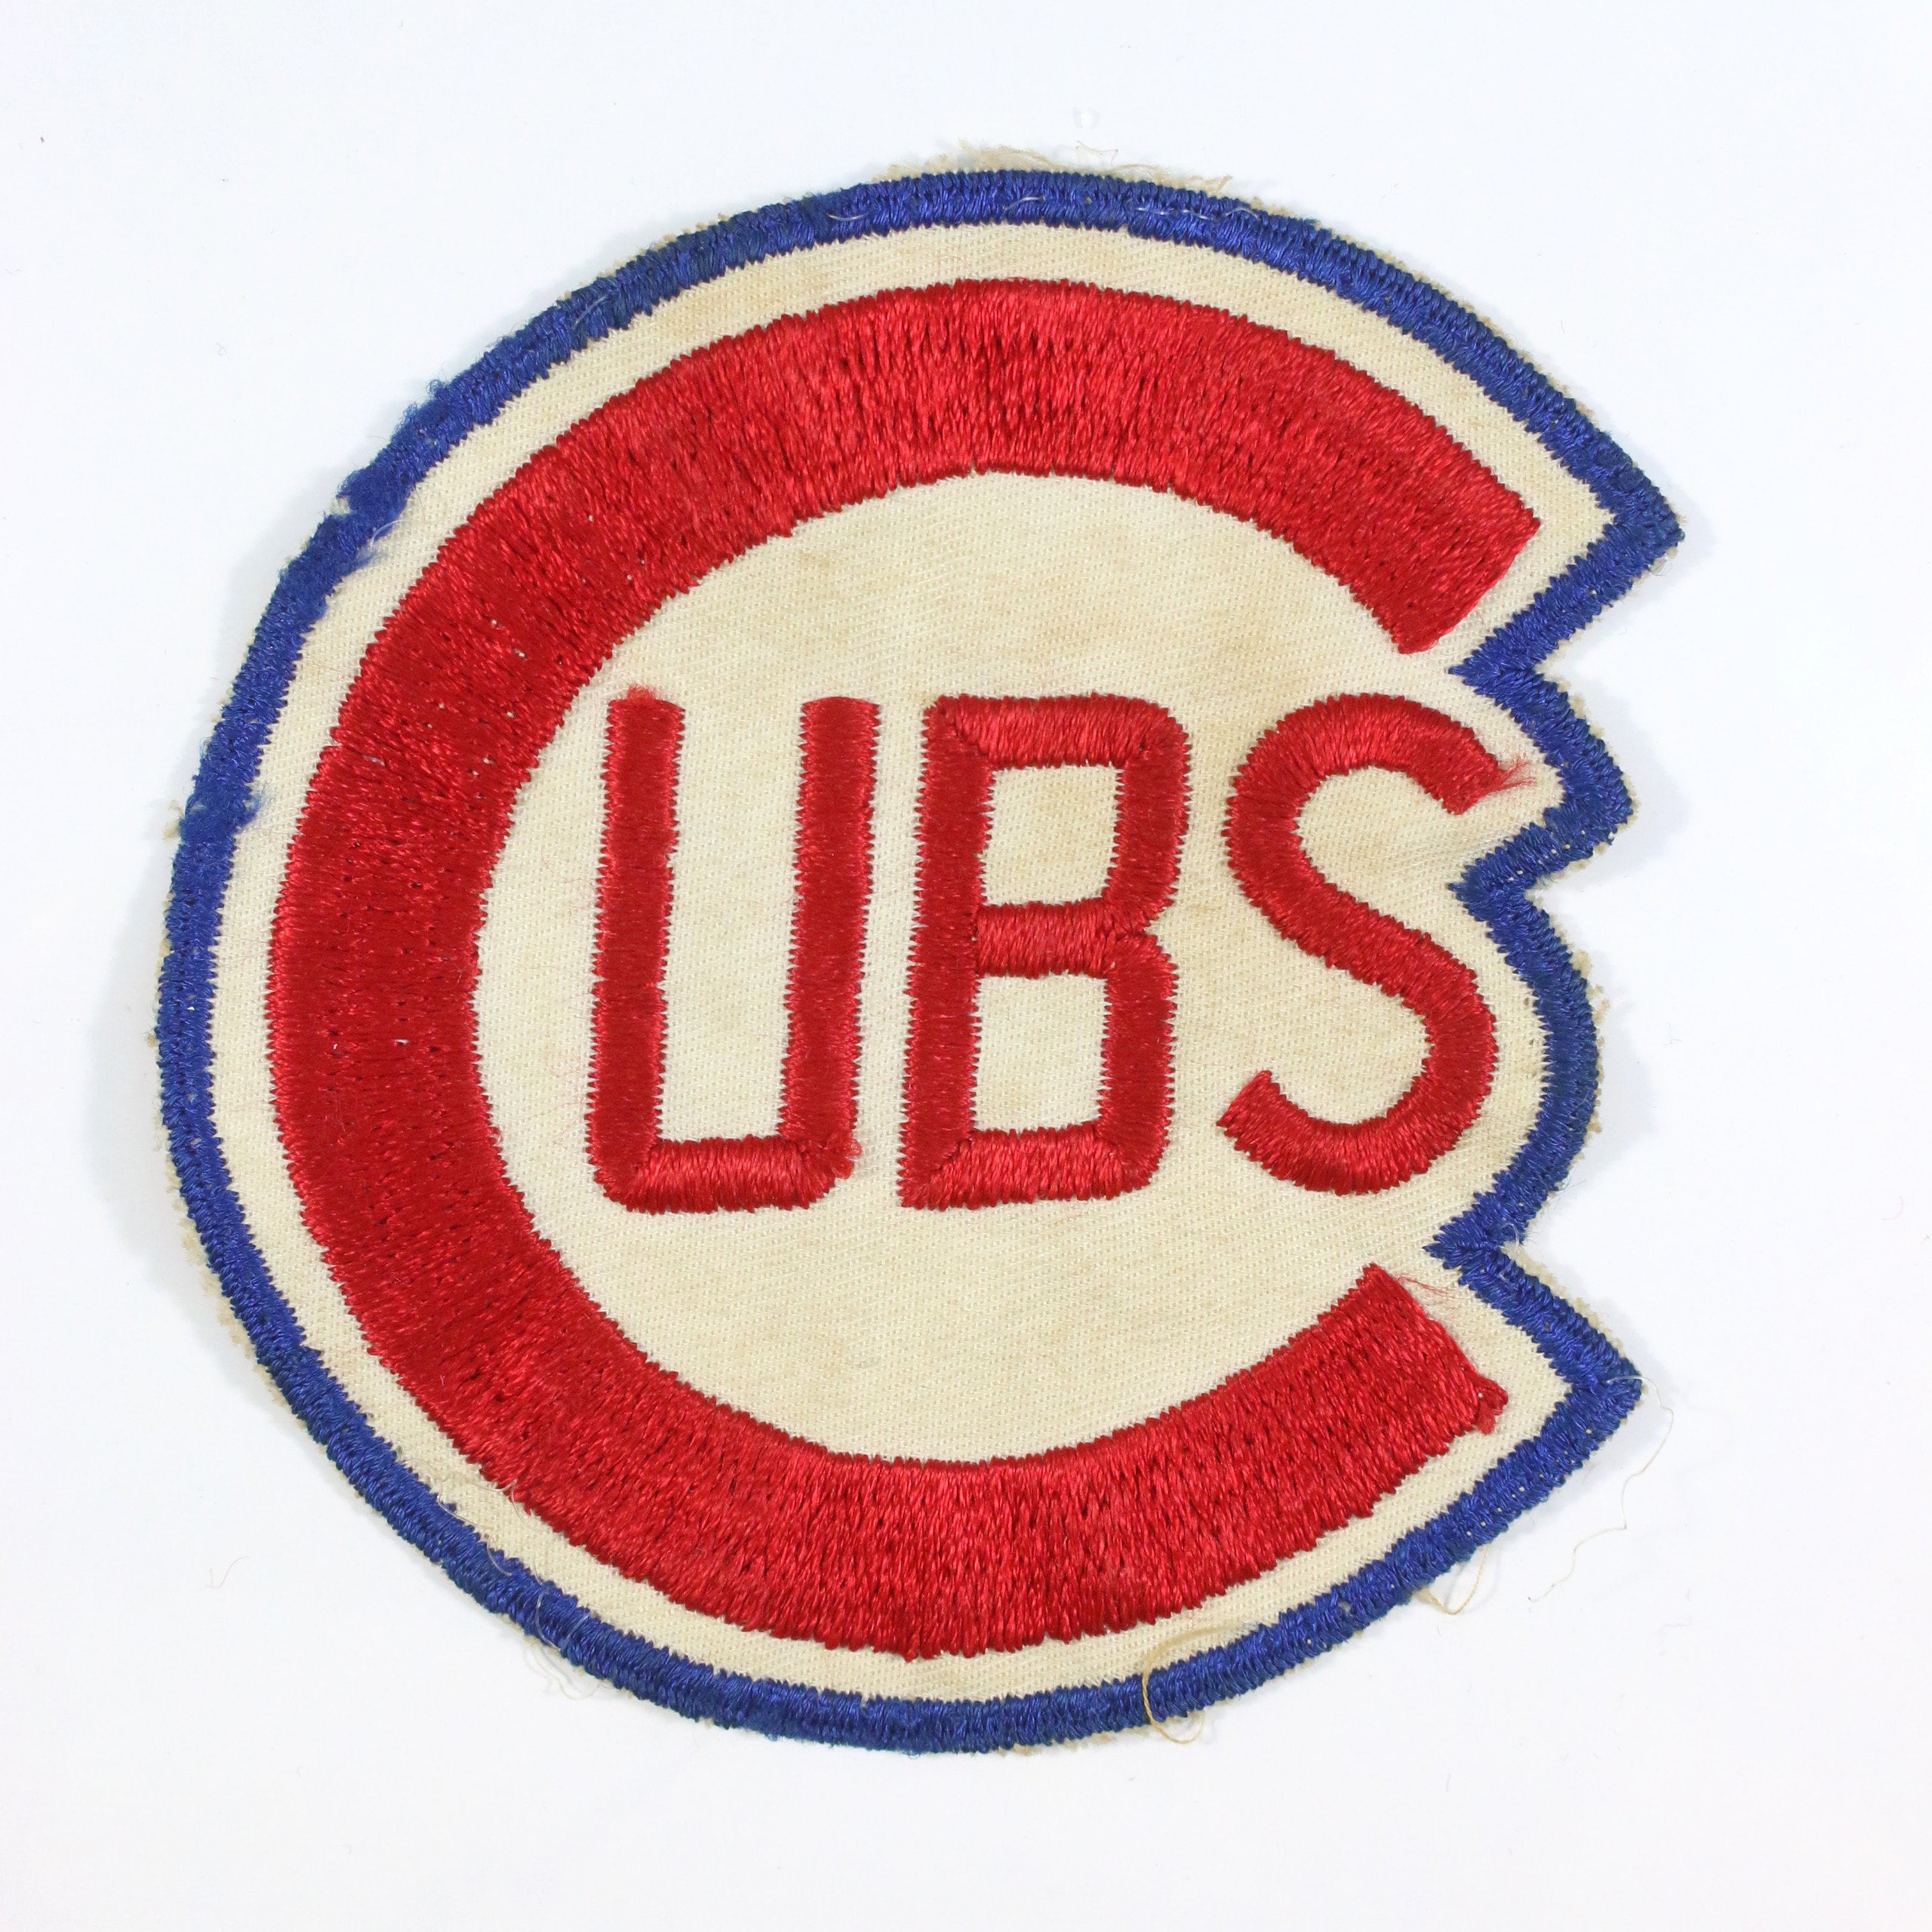 1950's Chicago Cubs Original Vintage Game Used Worn Crest 